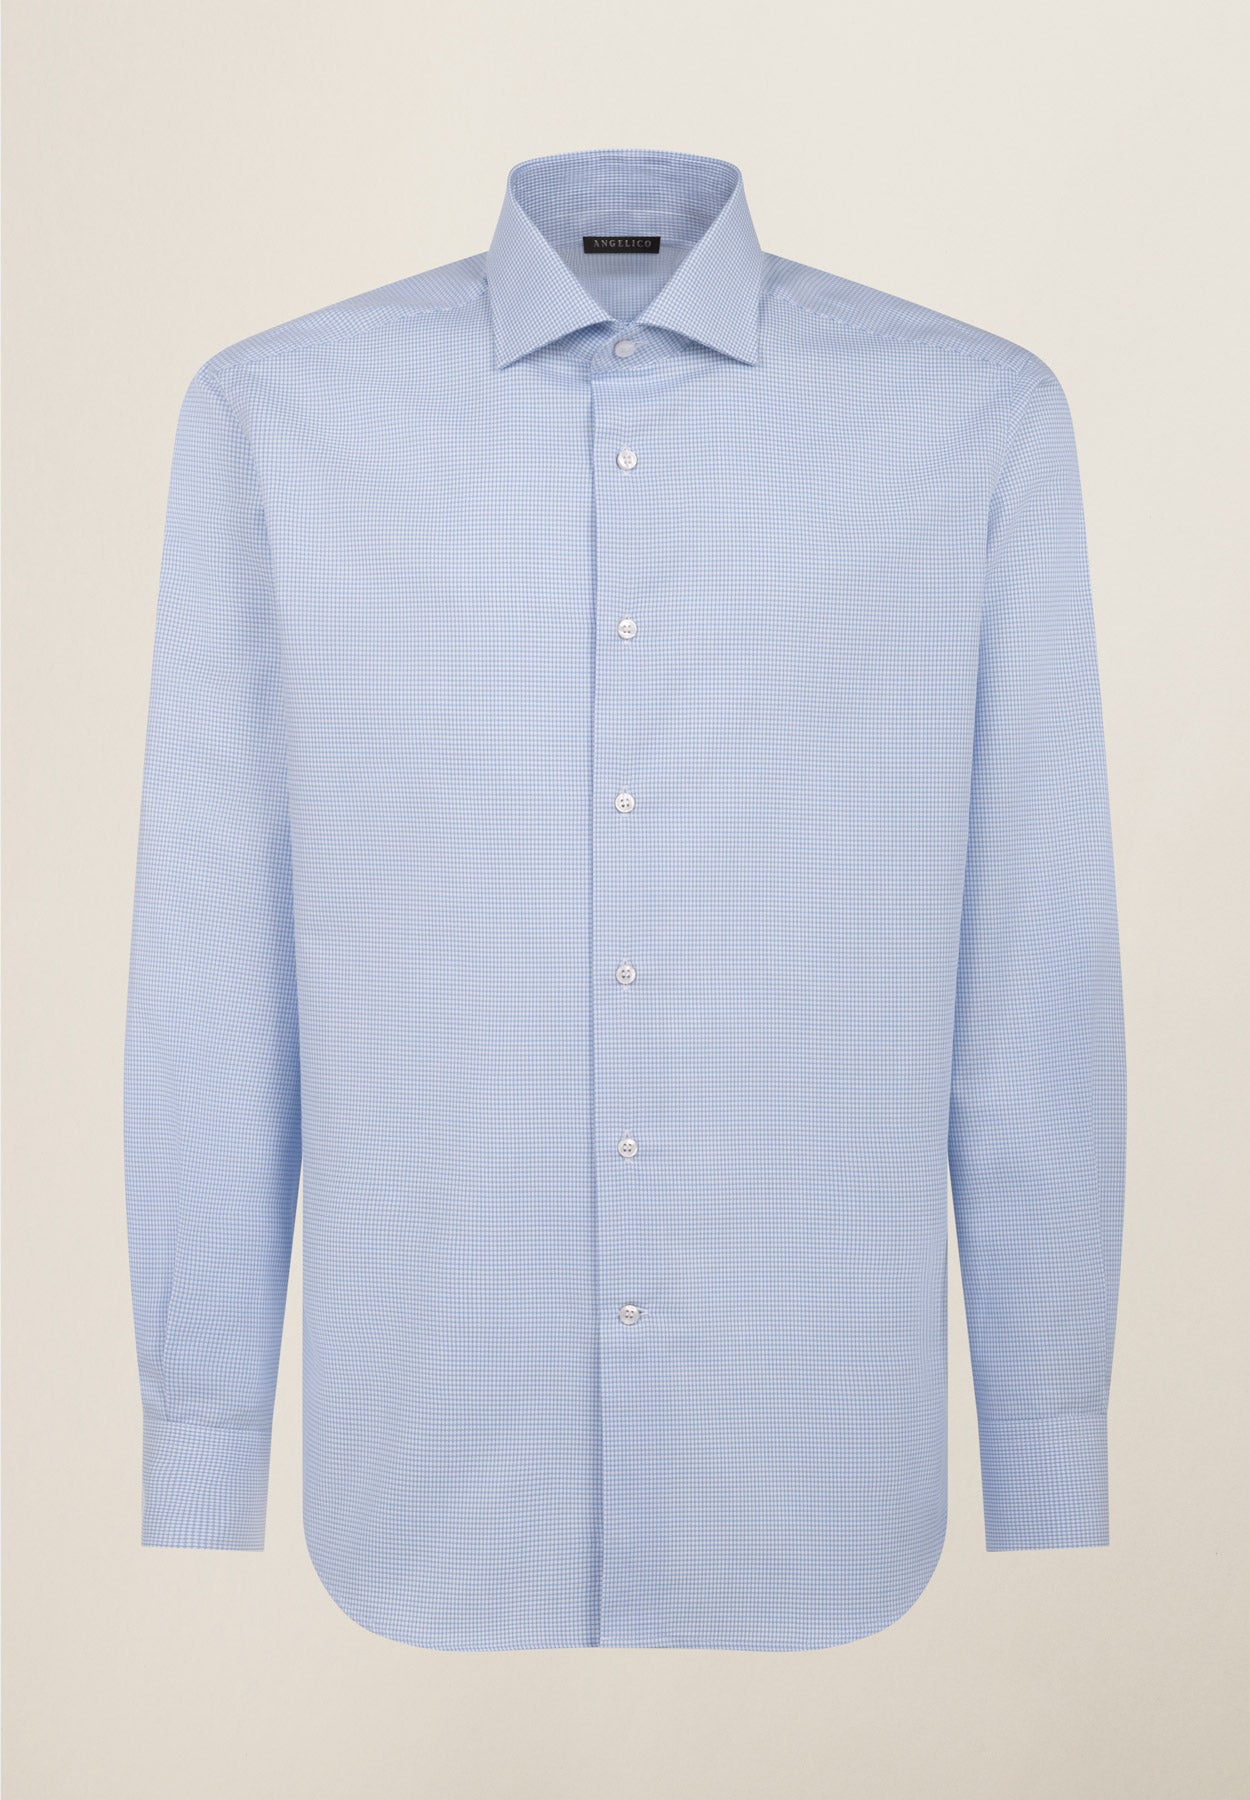 Camicia azzurra quadretto cotone comfort fit